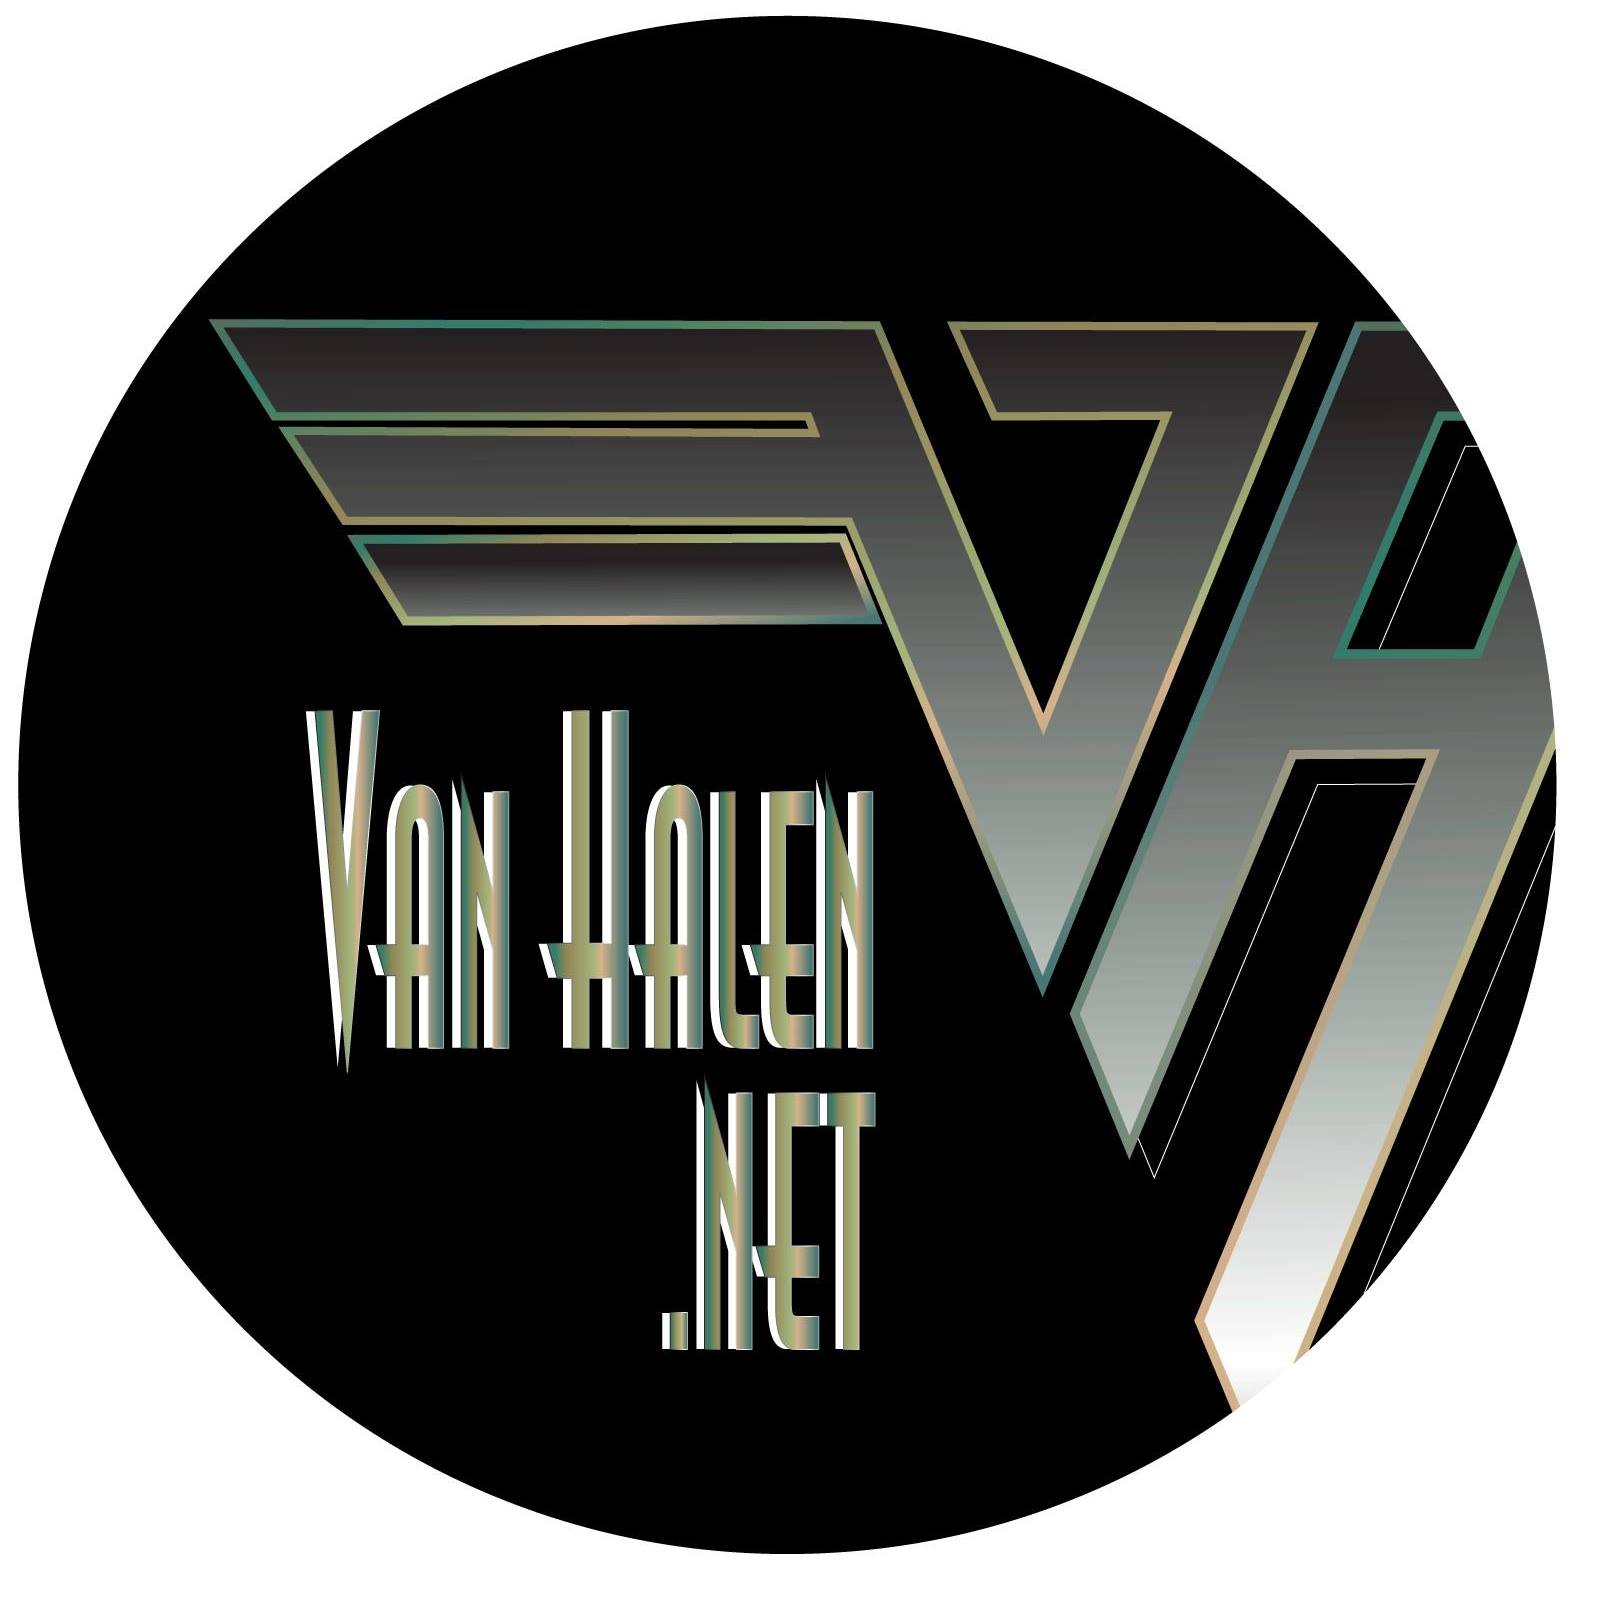 Van Halen.net- The Ultimate Van Halen Forum Site